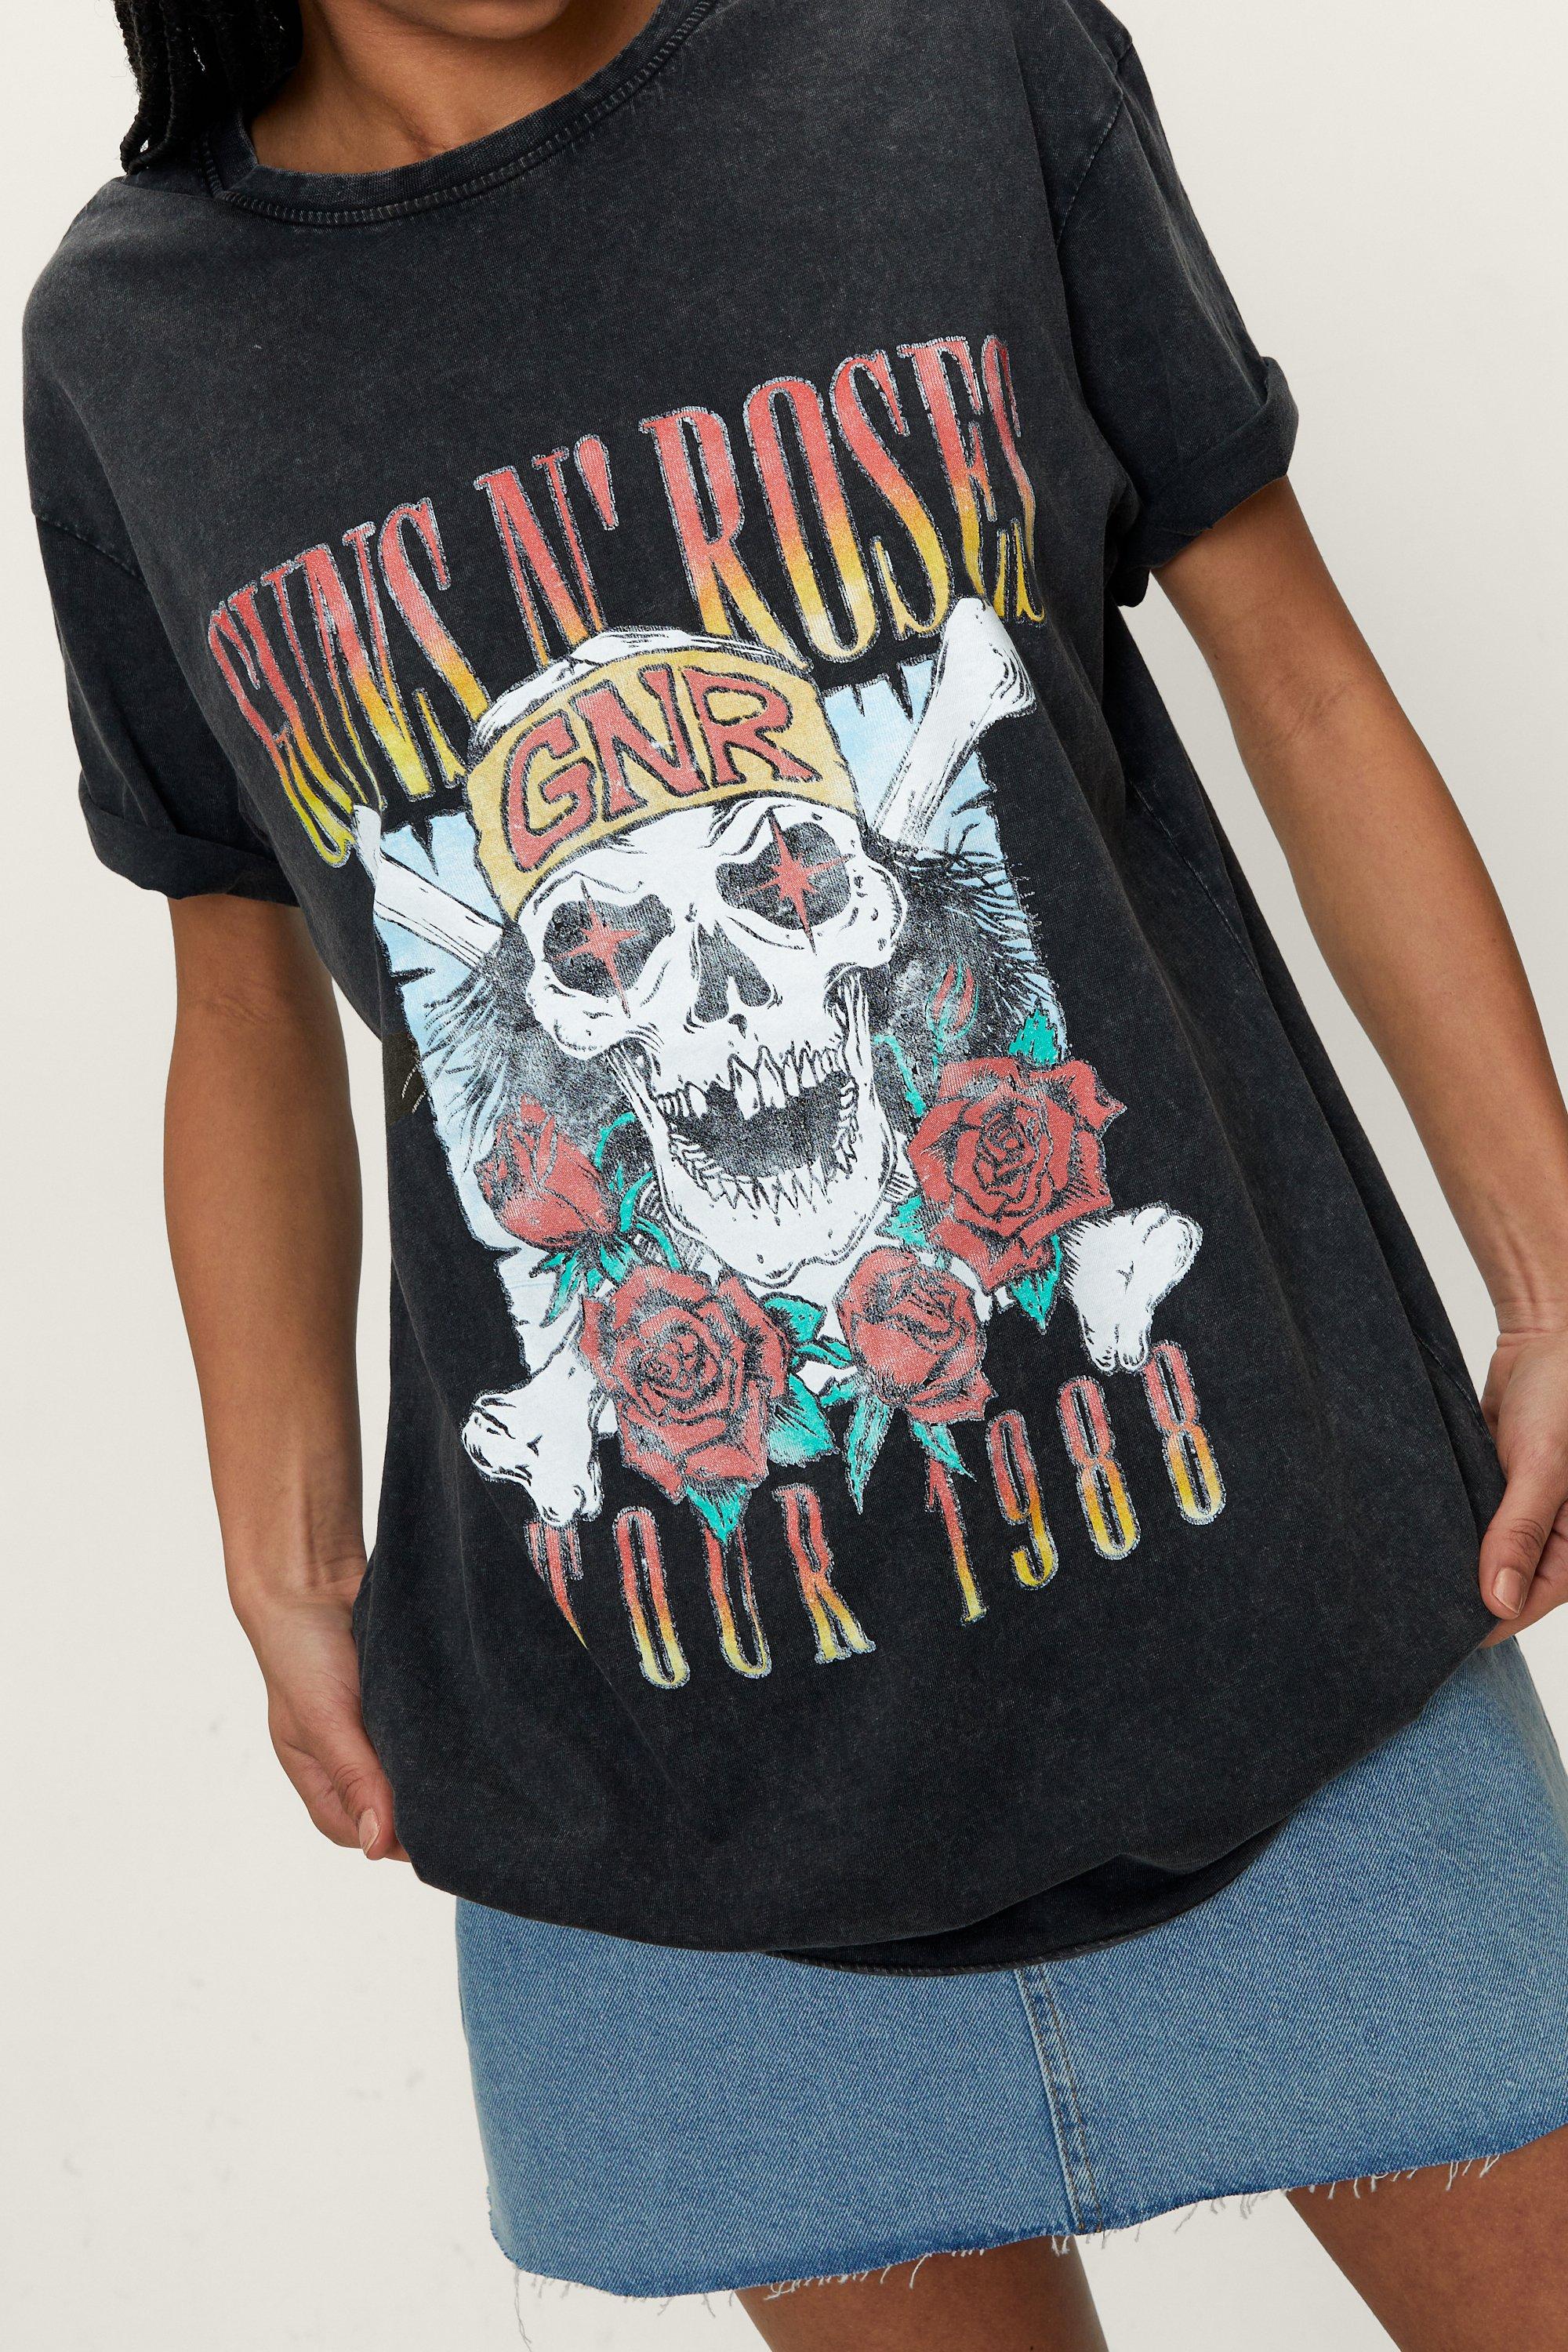 guns and roses tour t shirt 2022